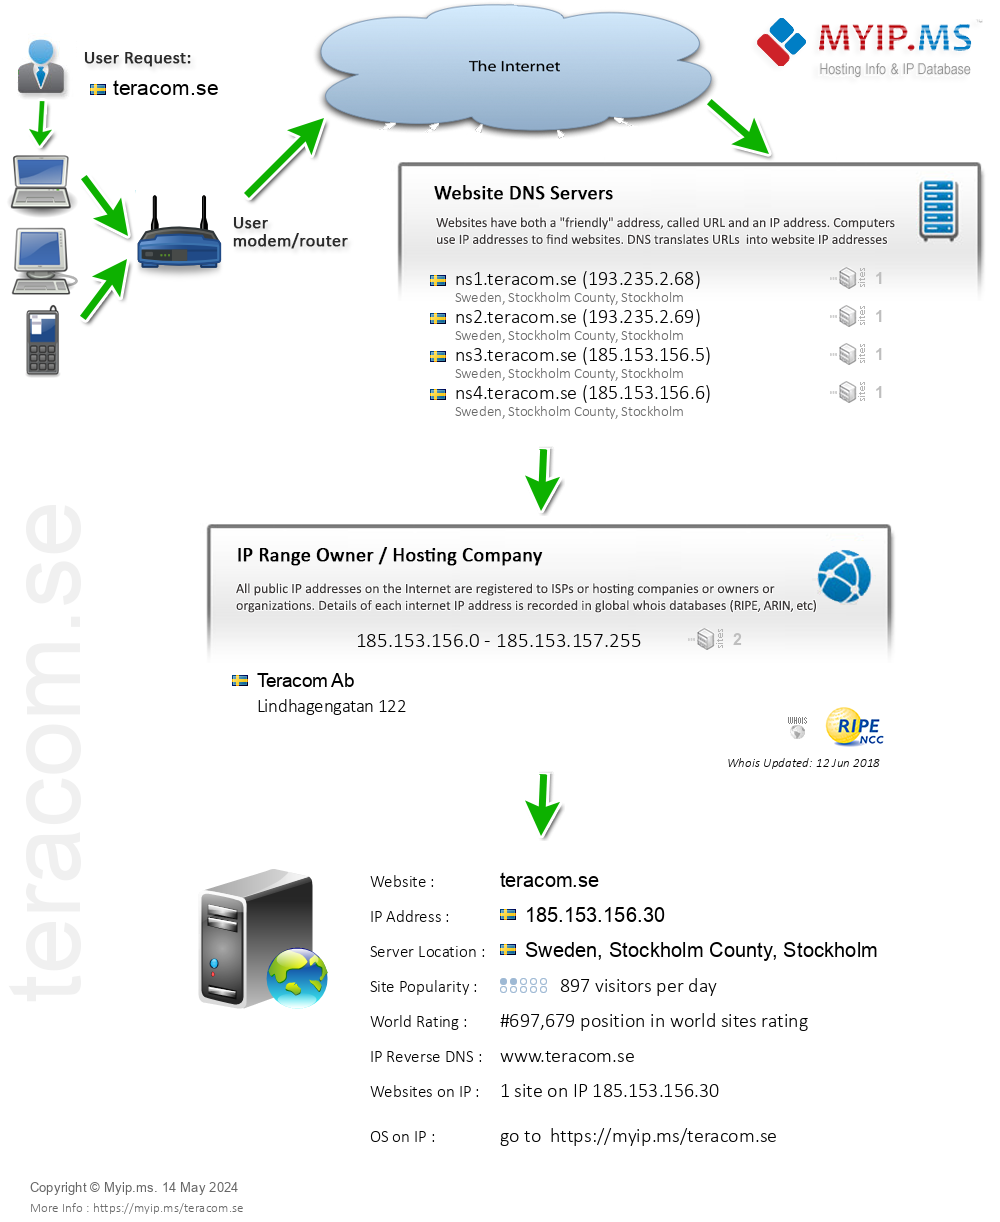 Teracom.se - Website Hosting Visual IP Diagram